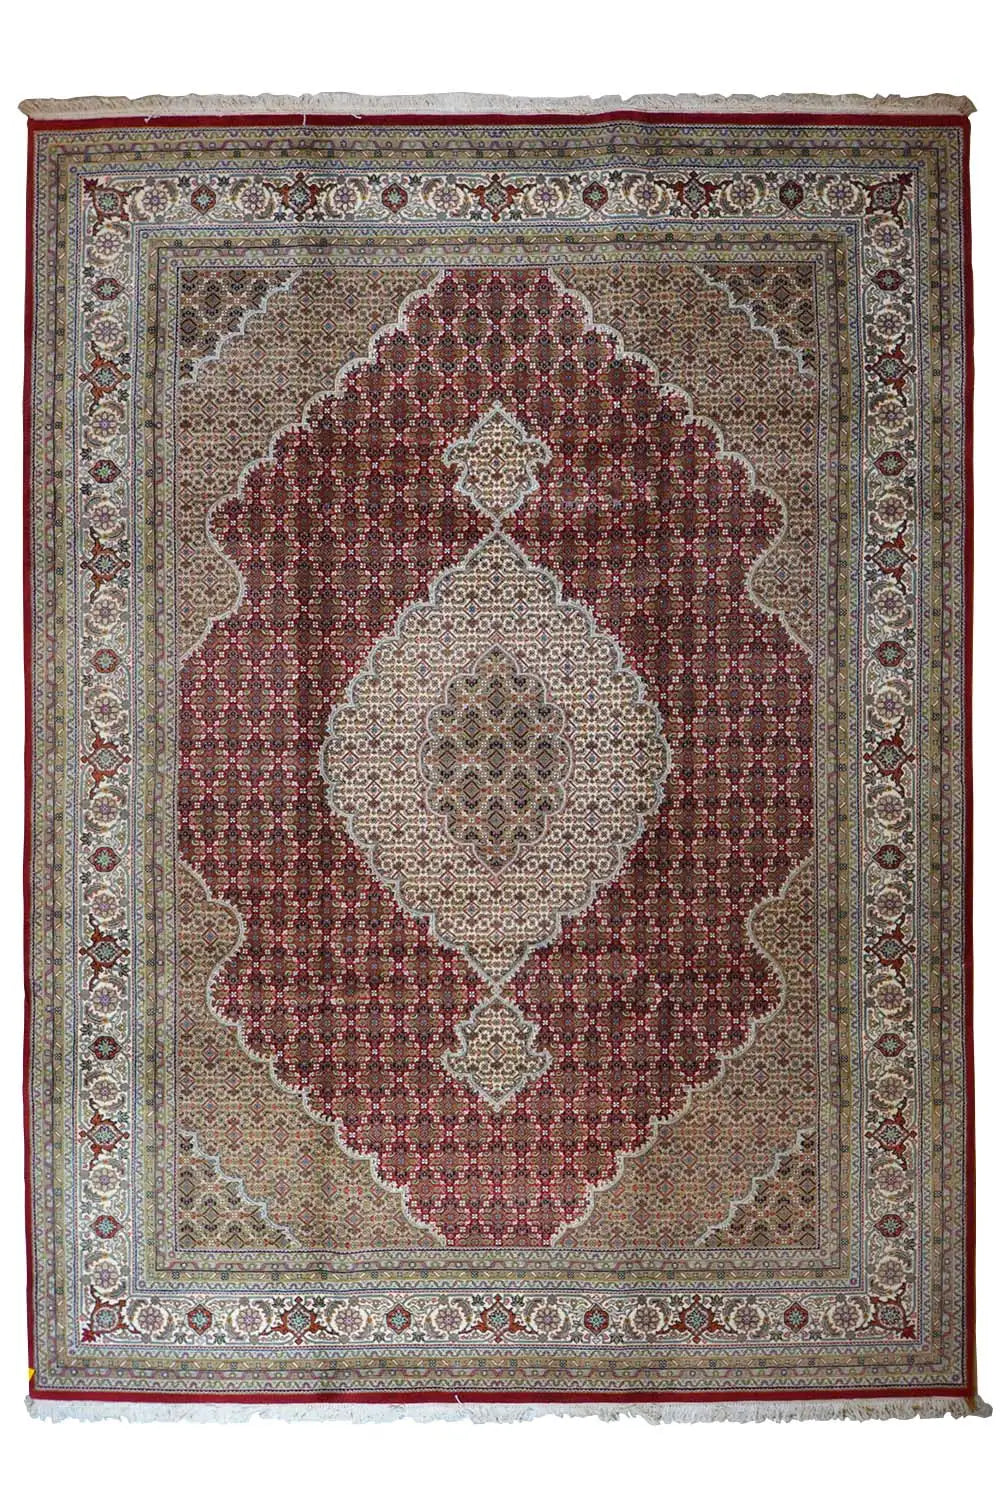 Mahi - 519402 (347x250cm) - German Carpet Shop